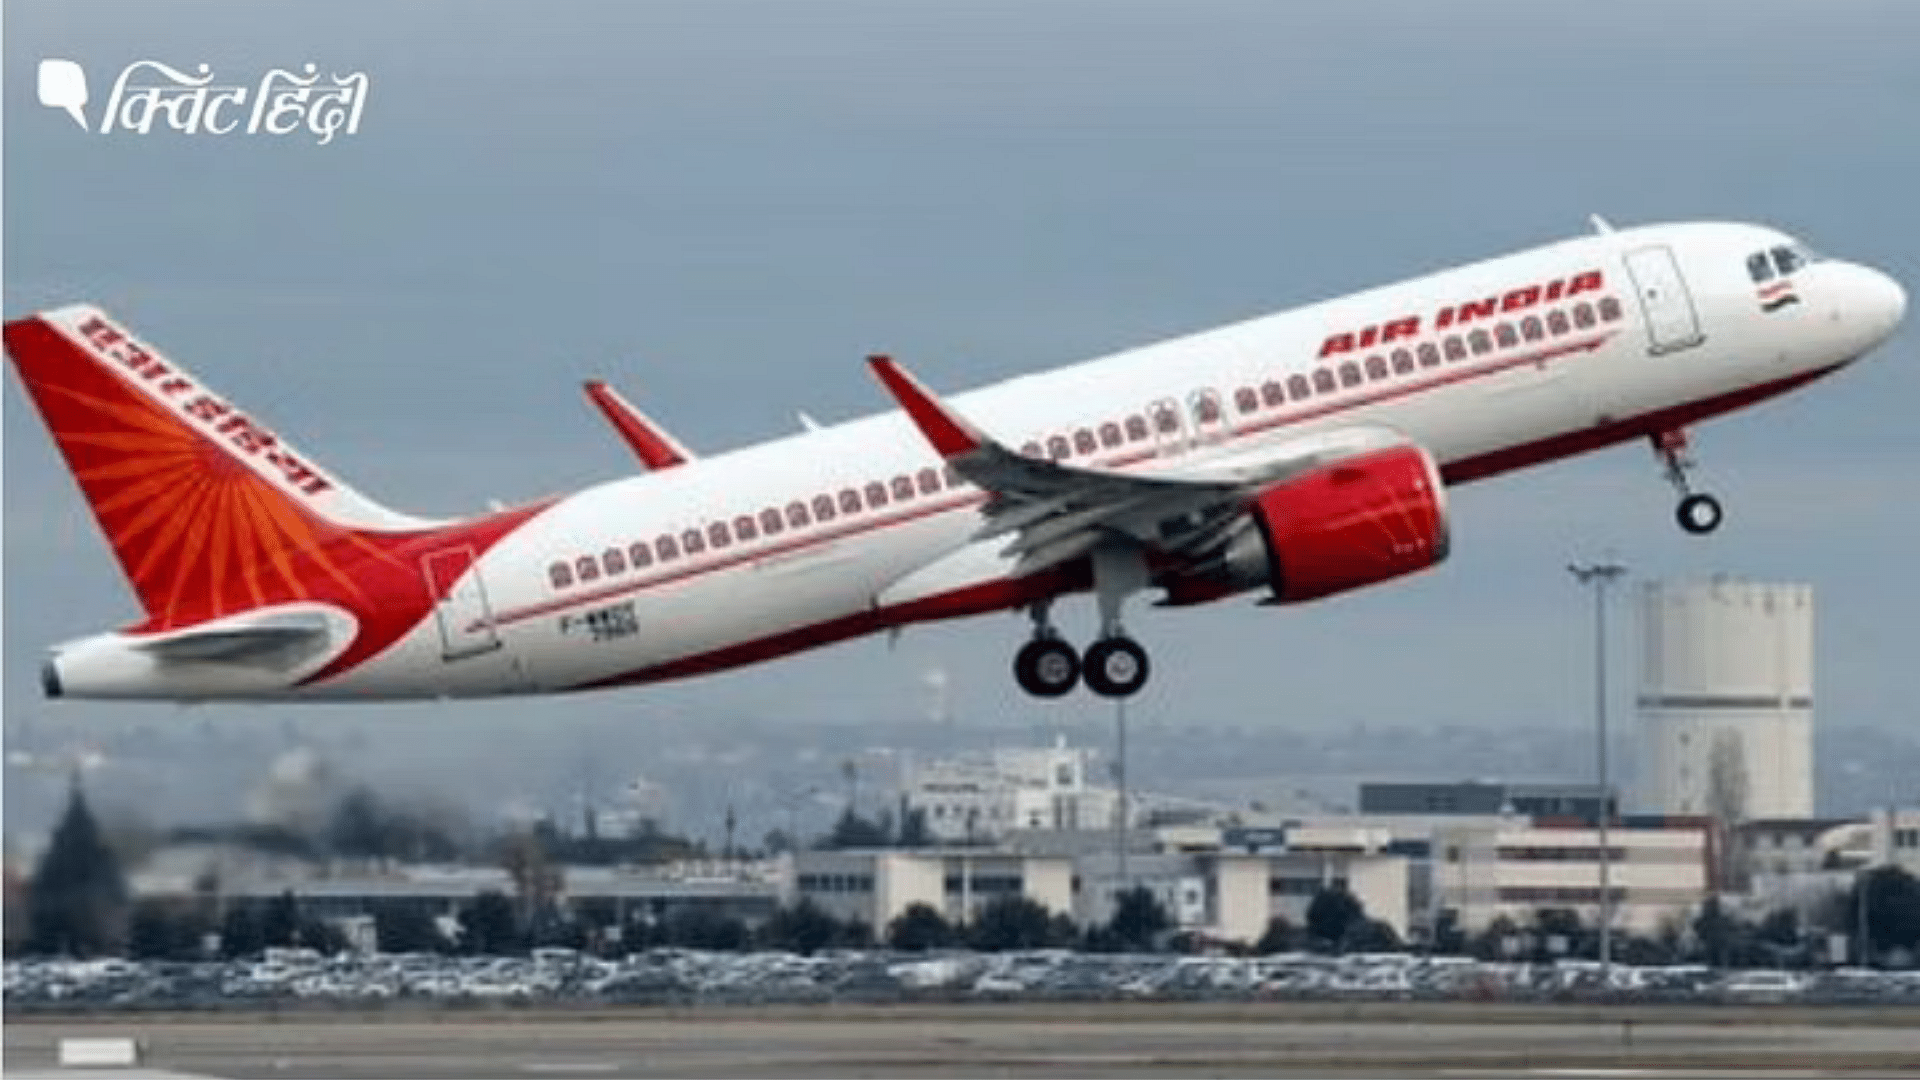 <div class="paragraphs"><p>Air india जल्द कर कती है 500 विमानों की खरीद की डील</p></div>